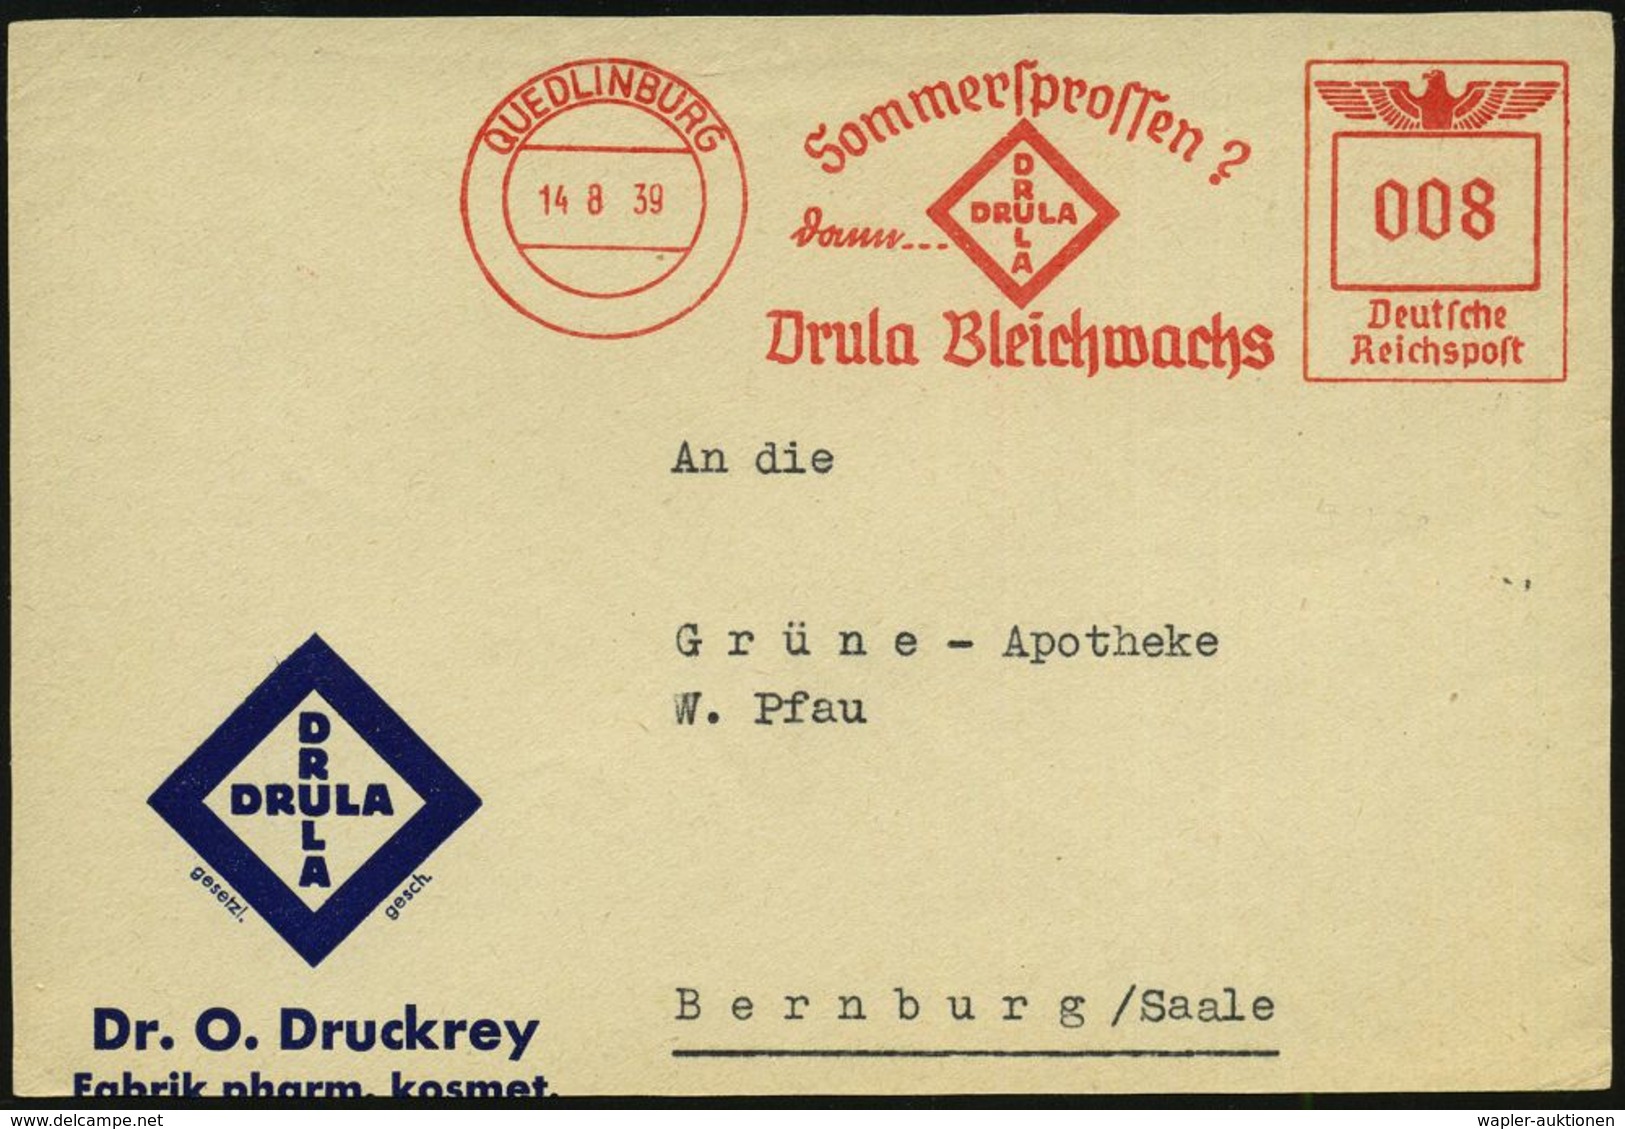 KOSMETIK / PARFÜM : QUEDLINBURG/ Sommersprossen?/ Dann.../ Drula Bleichwachs 1939 (14.8.) AFS (Logo) Auf Motivgl. Firmen - Pharmazie